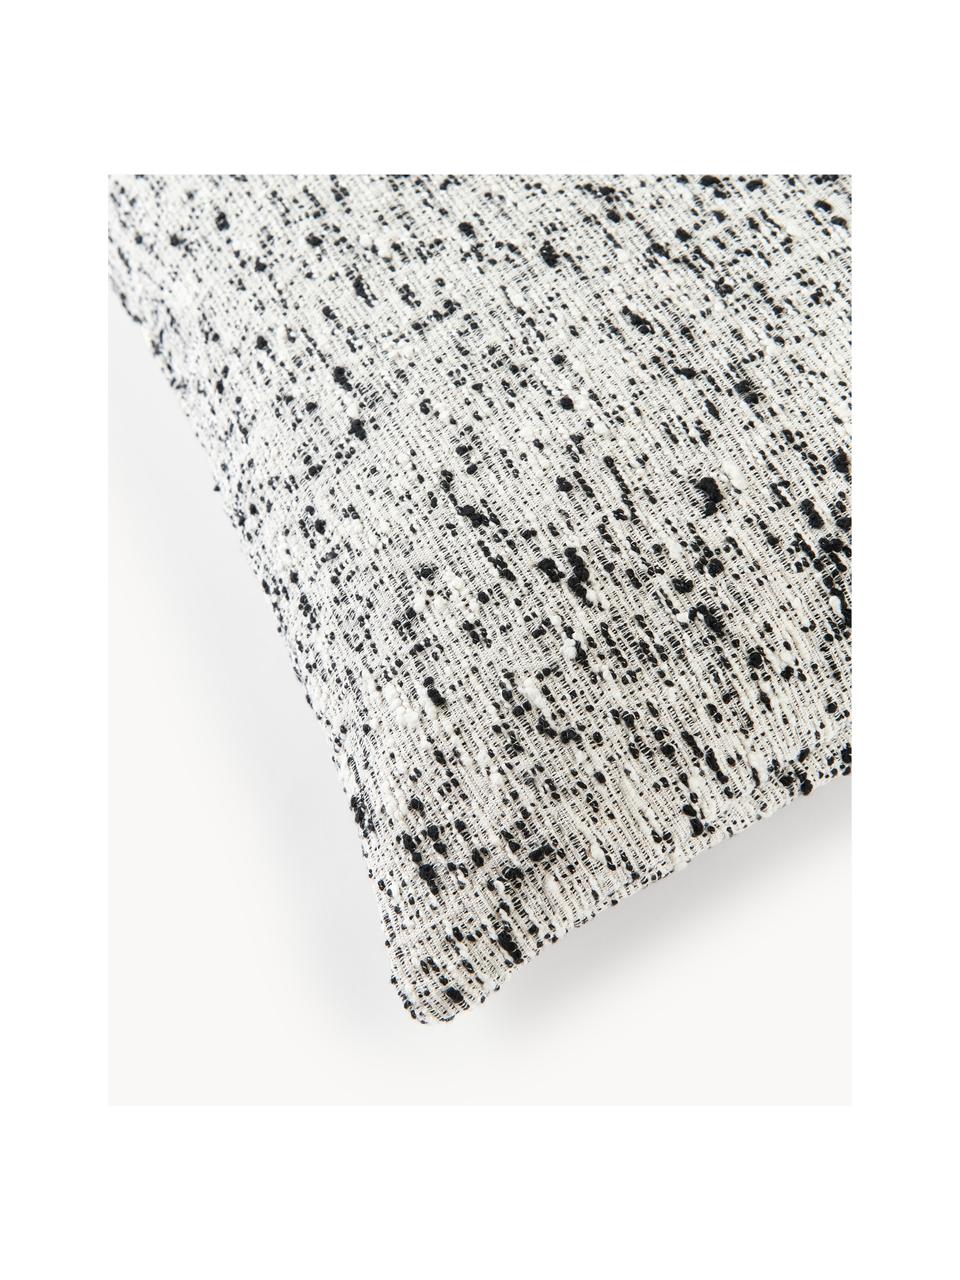 Bouclé-Kissenhülle Talea, Bouclé (92 % Baumwolle, 8 % Polyester)

Bouclé ist ein Material, das sich durch seine unregelmässig geschwungene Struktur auszeichnet. Die charakteristische Oberfläche entsteht durch eingewebte Schlingen aus verschiedenartigen Garnen, die dem Stoff eine einzigartige Struktur verleihen. Die Schlingenstruktur hat einen isolierenden und gleichzeitig flauschigen Effekt, der den Stoff besonders kuschelig macht., Schwarz, Weiss, B 50 x L 50 cm